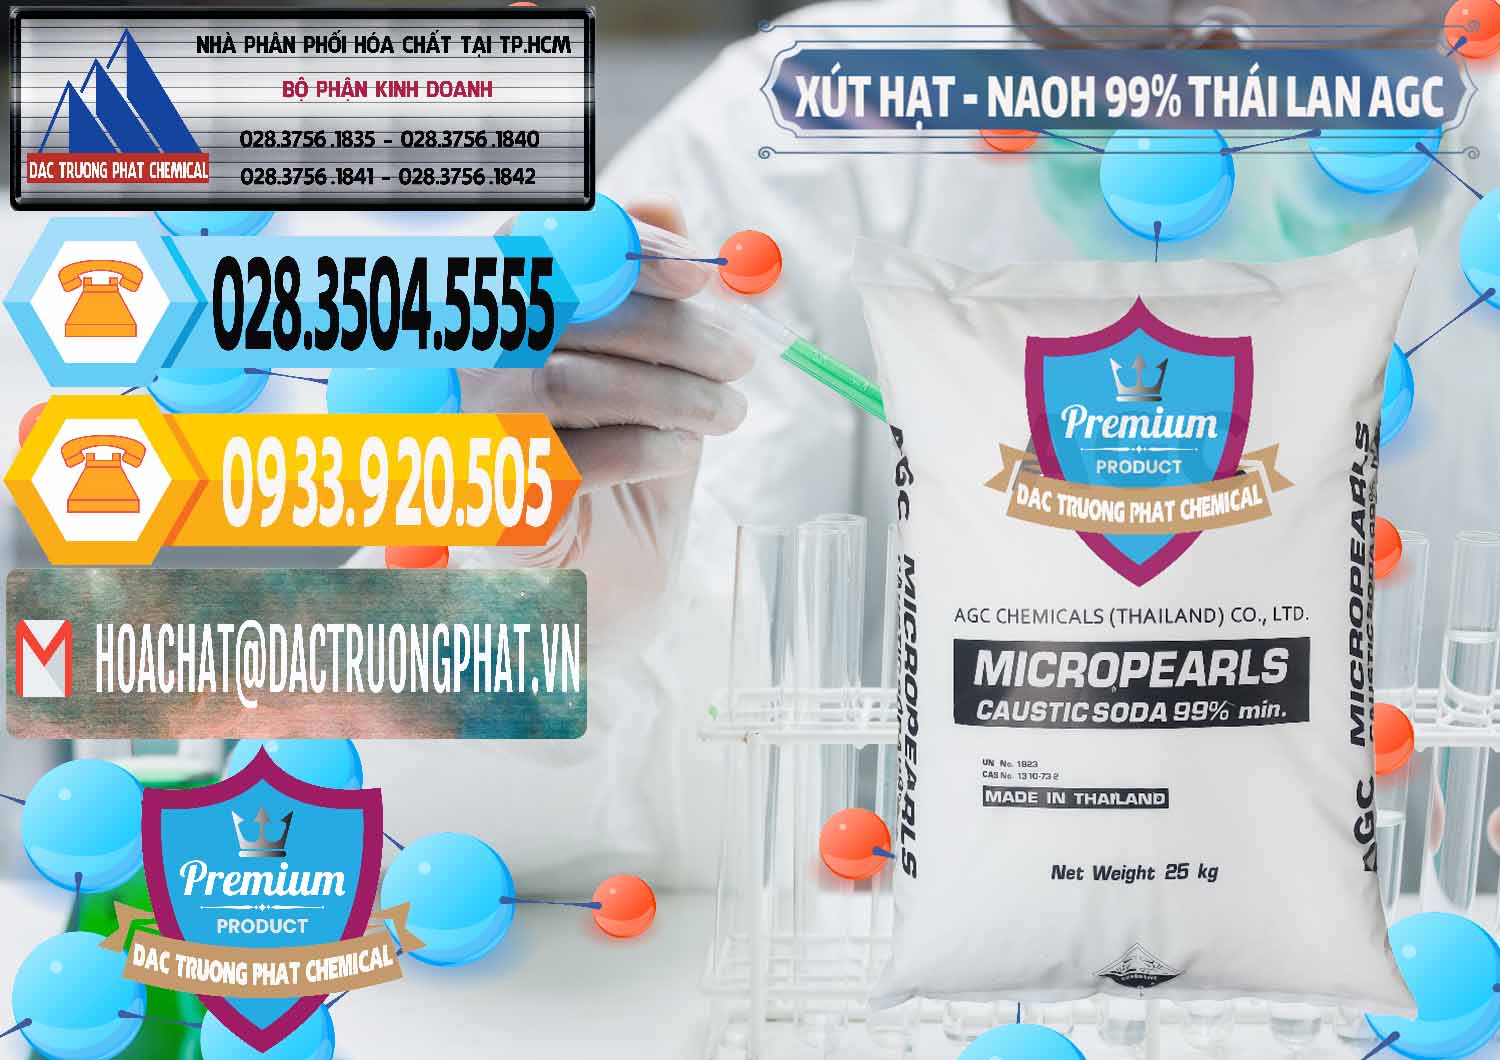 Chuyên bán ( phân phối ) Xút Hạt - NaOH Bột 99% AGC Thái Lan - 0168 - Công ty cung cấp ( nhập khẩu ) hóa chất tại TP.HCM - hoachattayrua.net